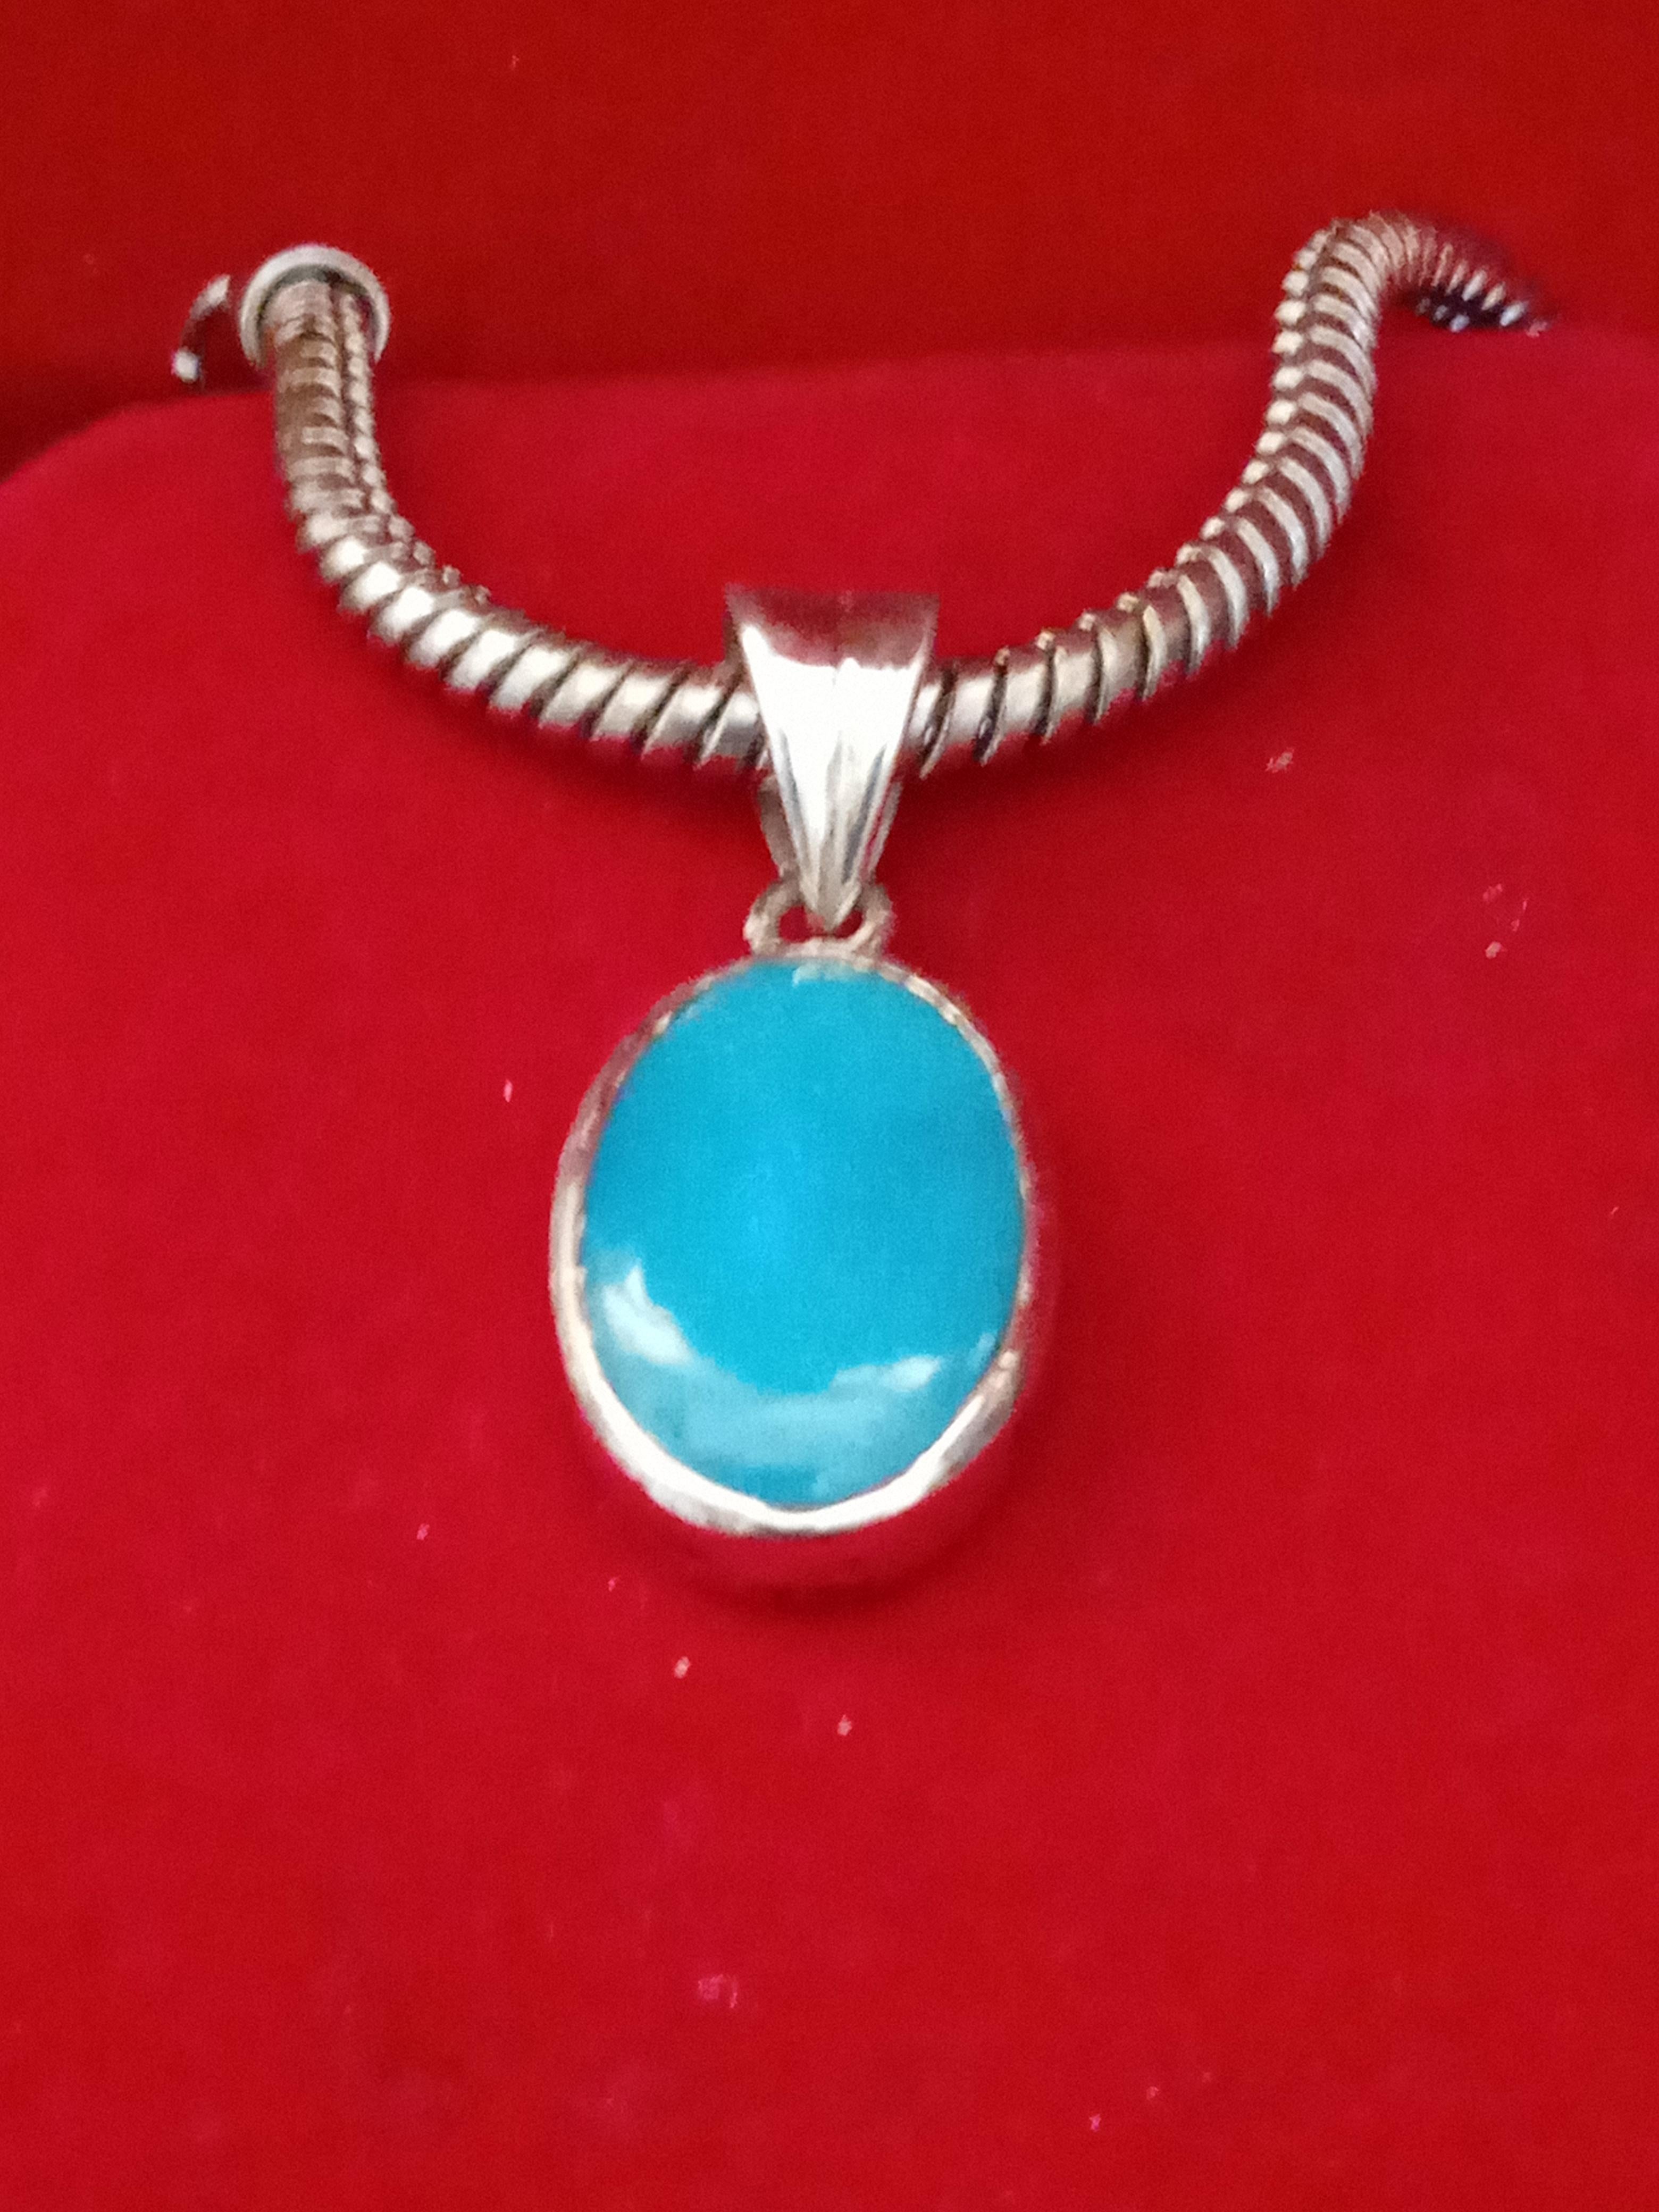 Améliorez votre collection de bijoux avec ce superbe collier pendentif en pierre turquoise naturelle de forme ovale. Le pendentif est magnifiquement réalisé avec une fermeture à crochet, en argent 925 et en métal argenté fin. Le collier mesure 30 cm